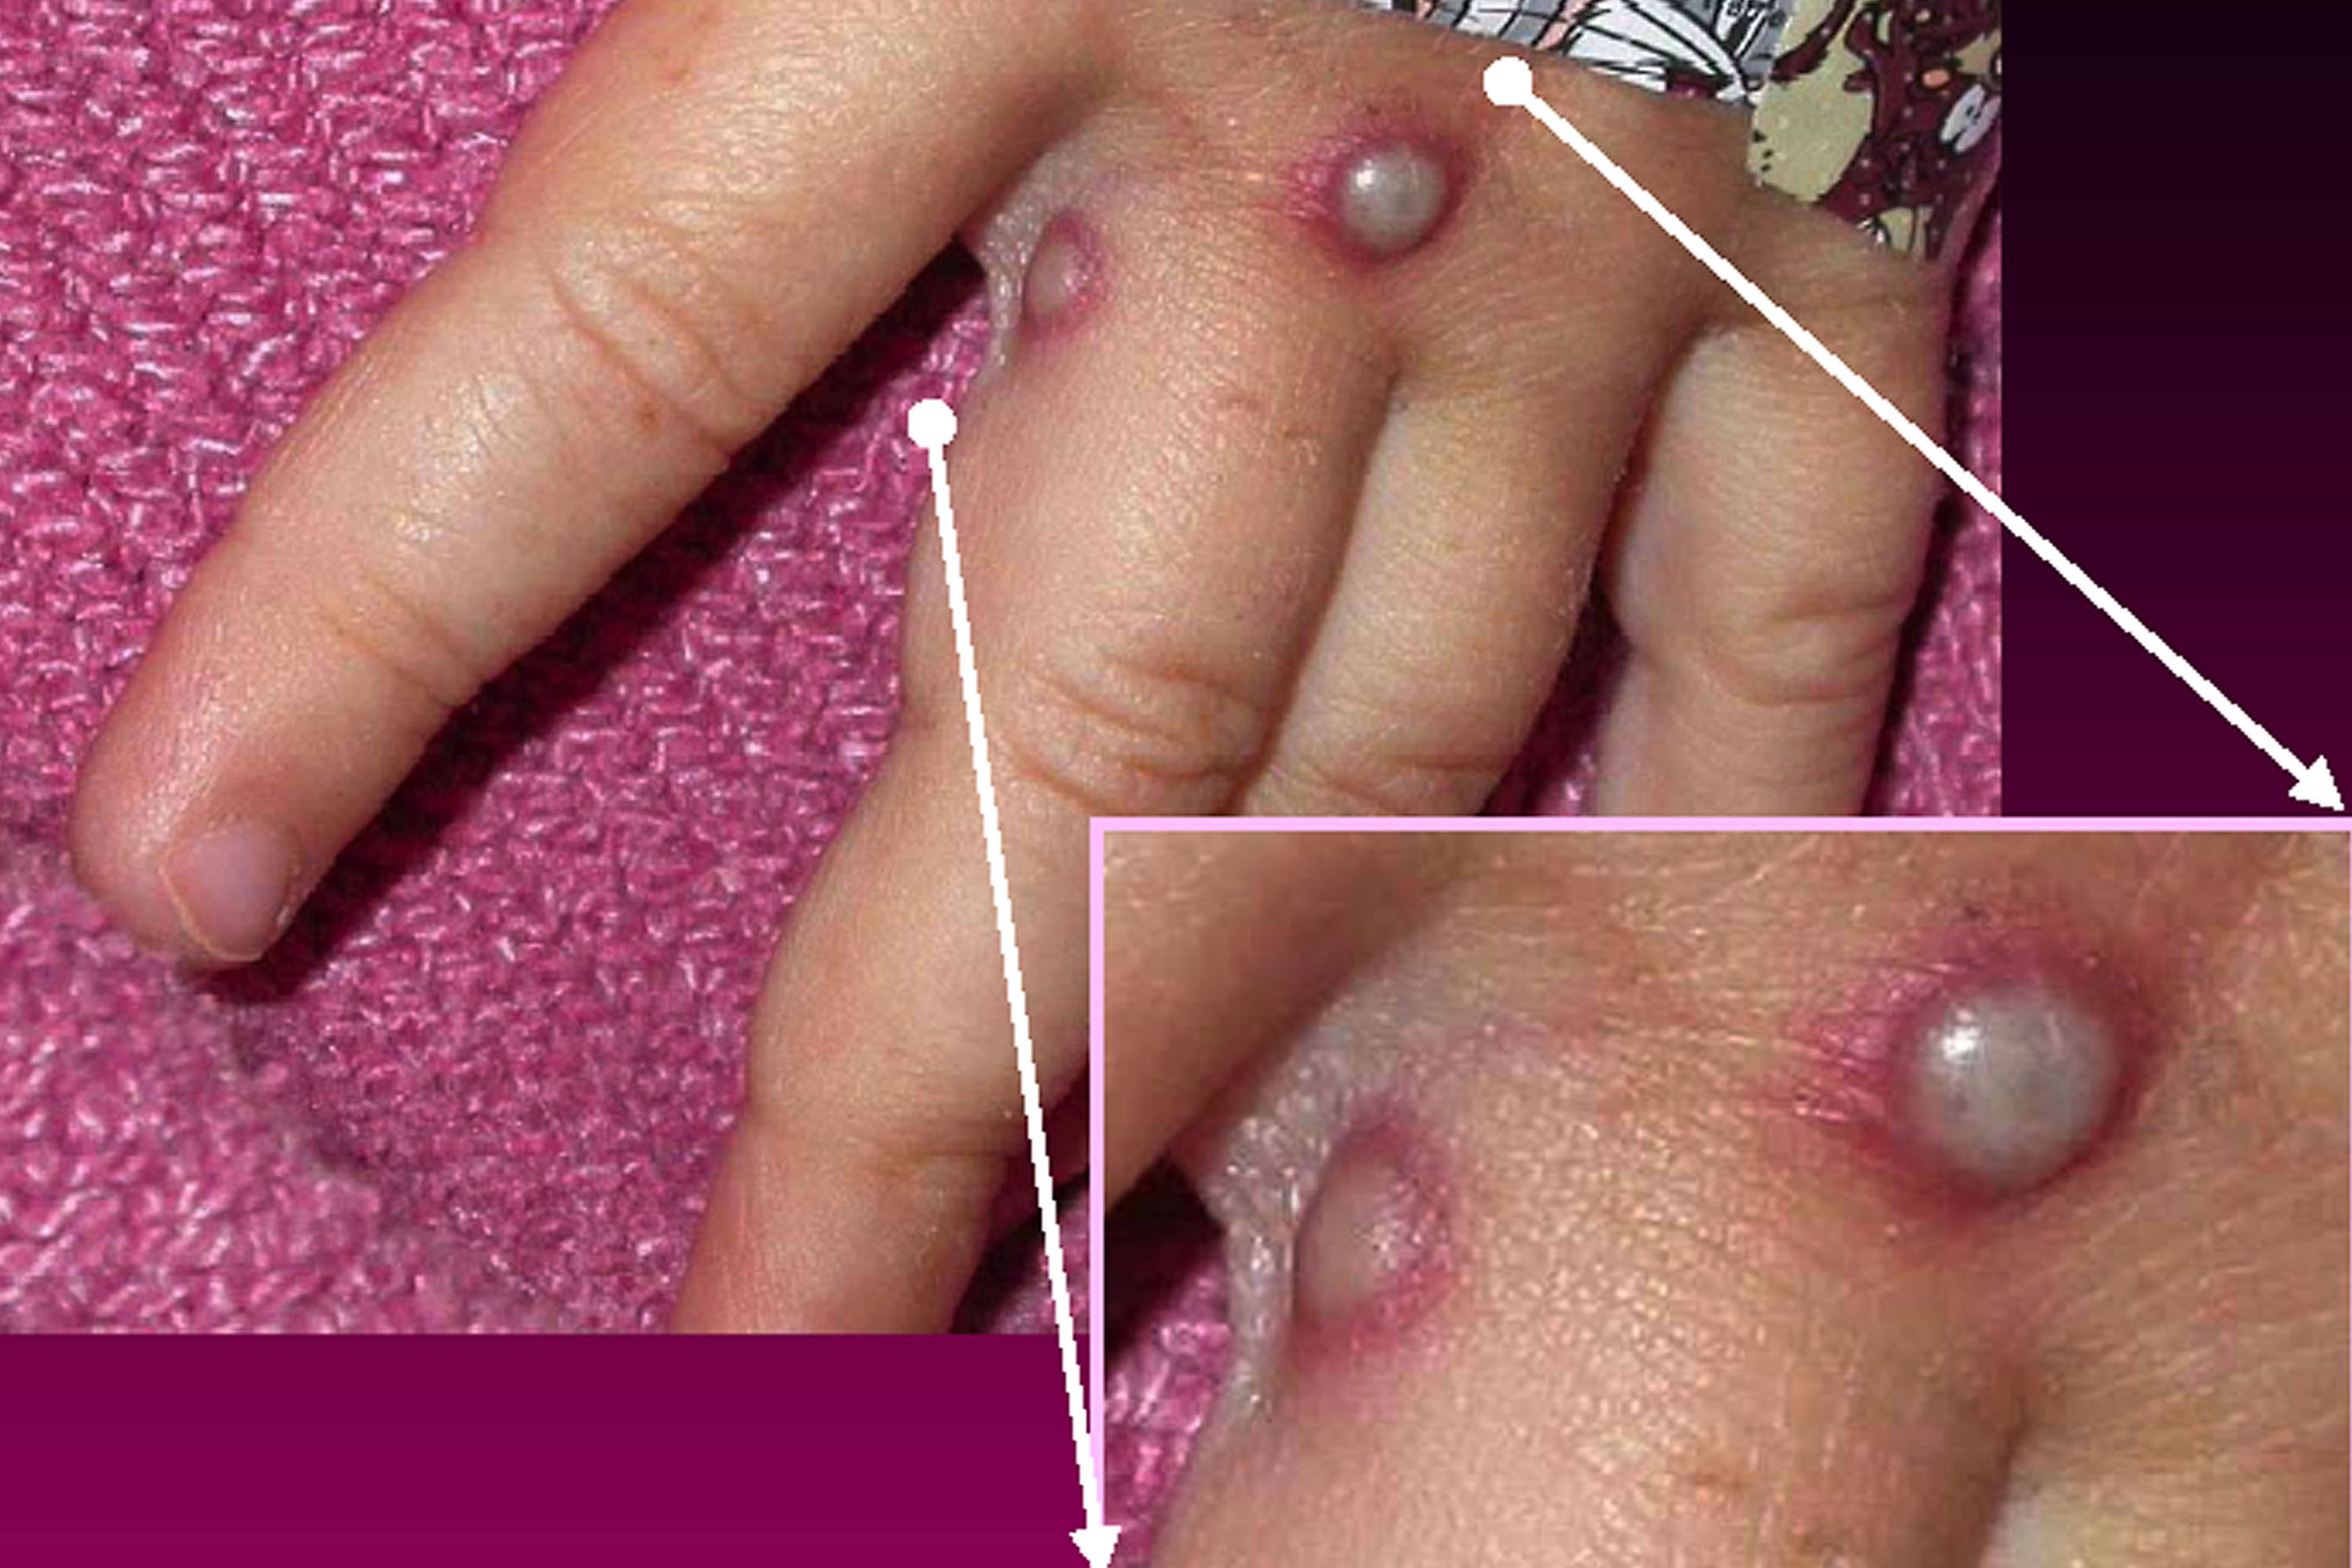 Las diferentes lesiones en la piel son síntomas de viruela. Muchos de los pacientes tienen lesiones genitales/ CDC/Getty Images) 